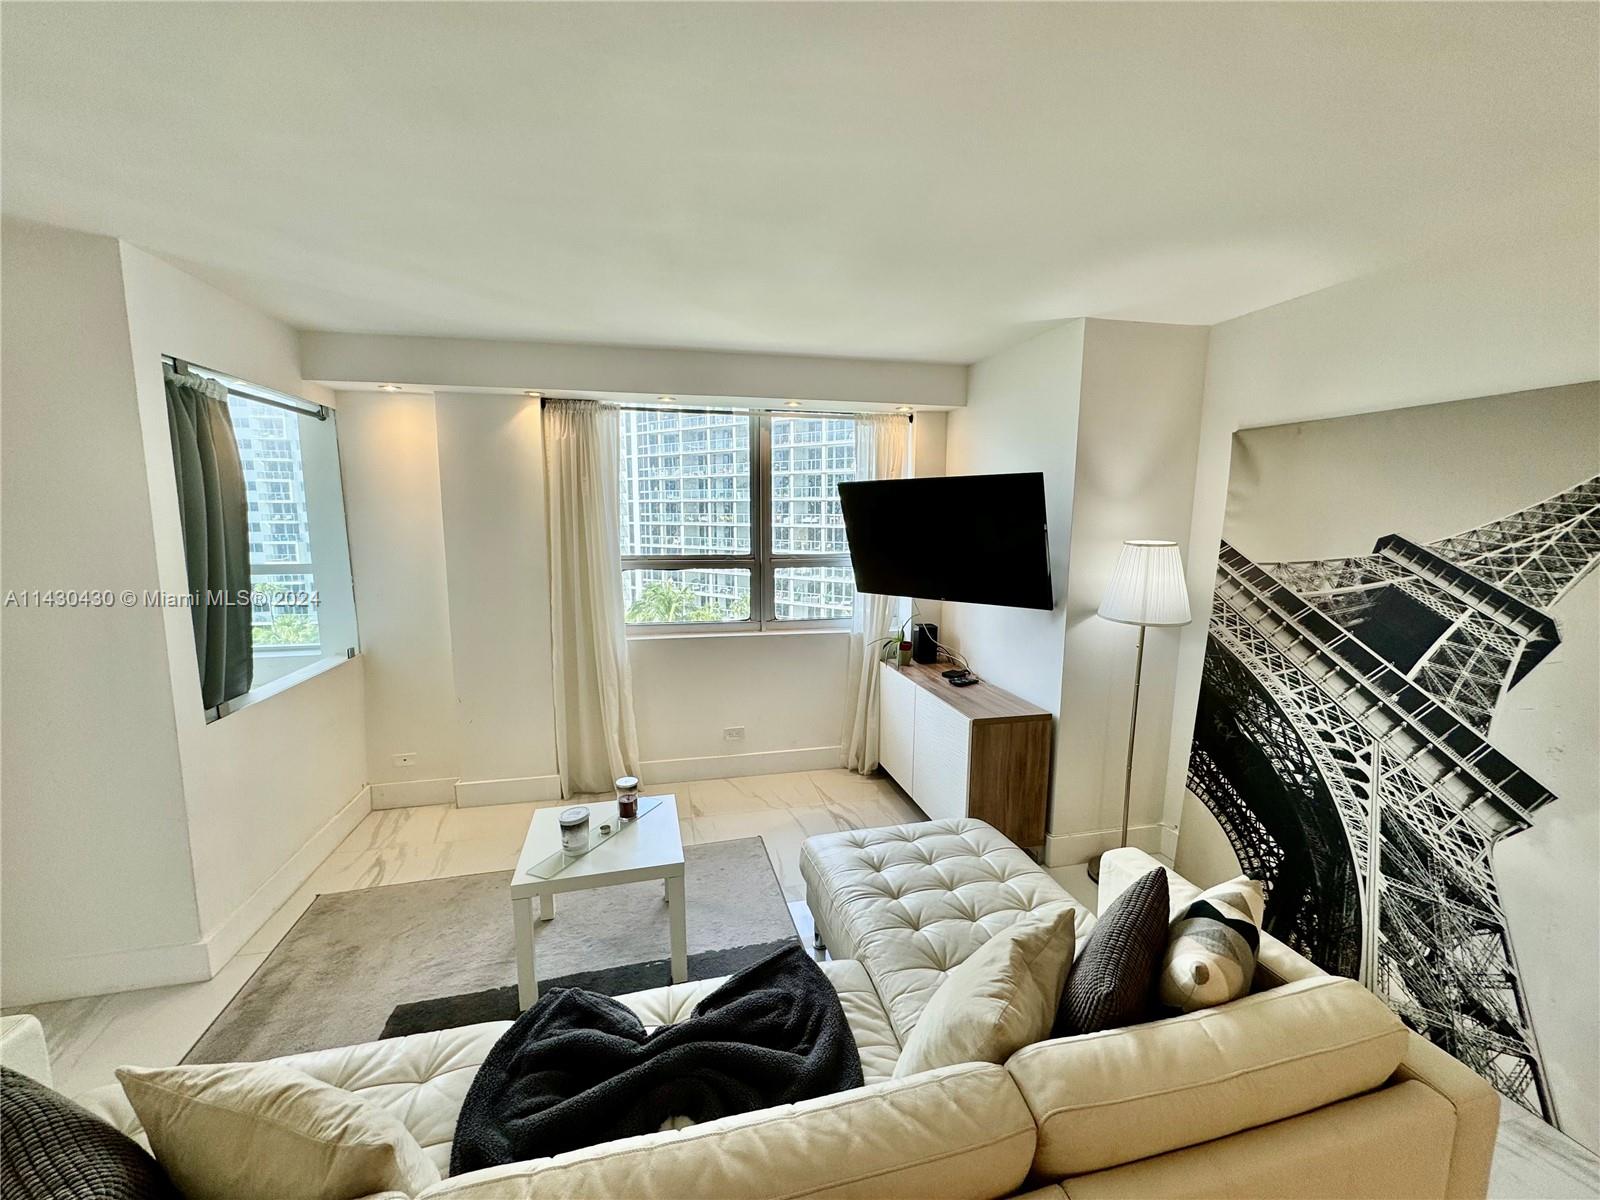 Rental Property at 1500 Bay Rd 768S, Miami Beach, Miami-Dade County, Florida - Bedrooms: 2 
Bathrooms: 3  - $4,800 MO.